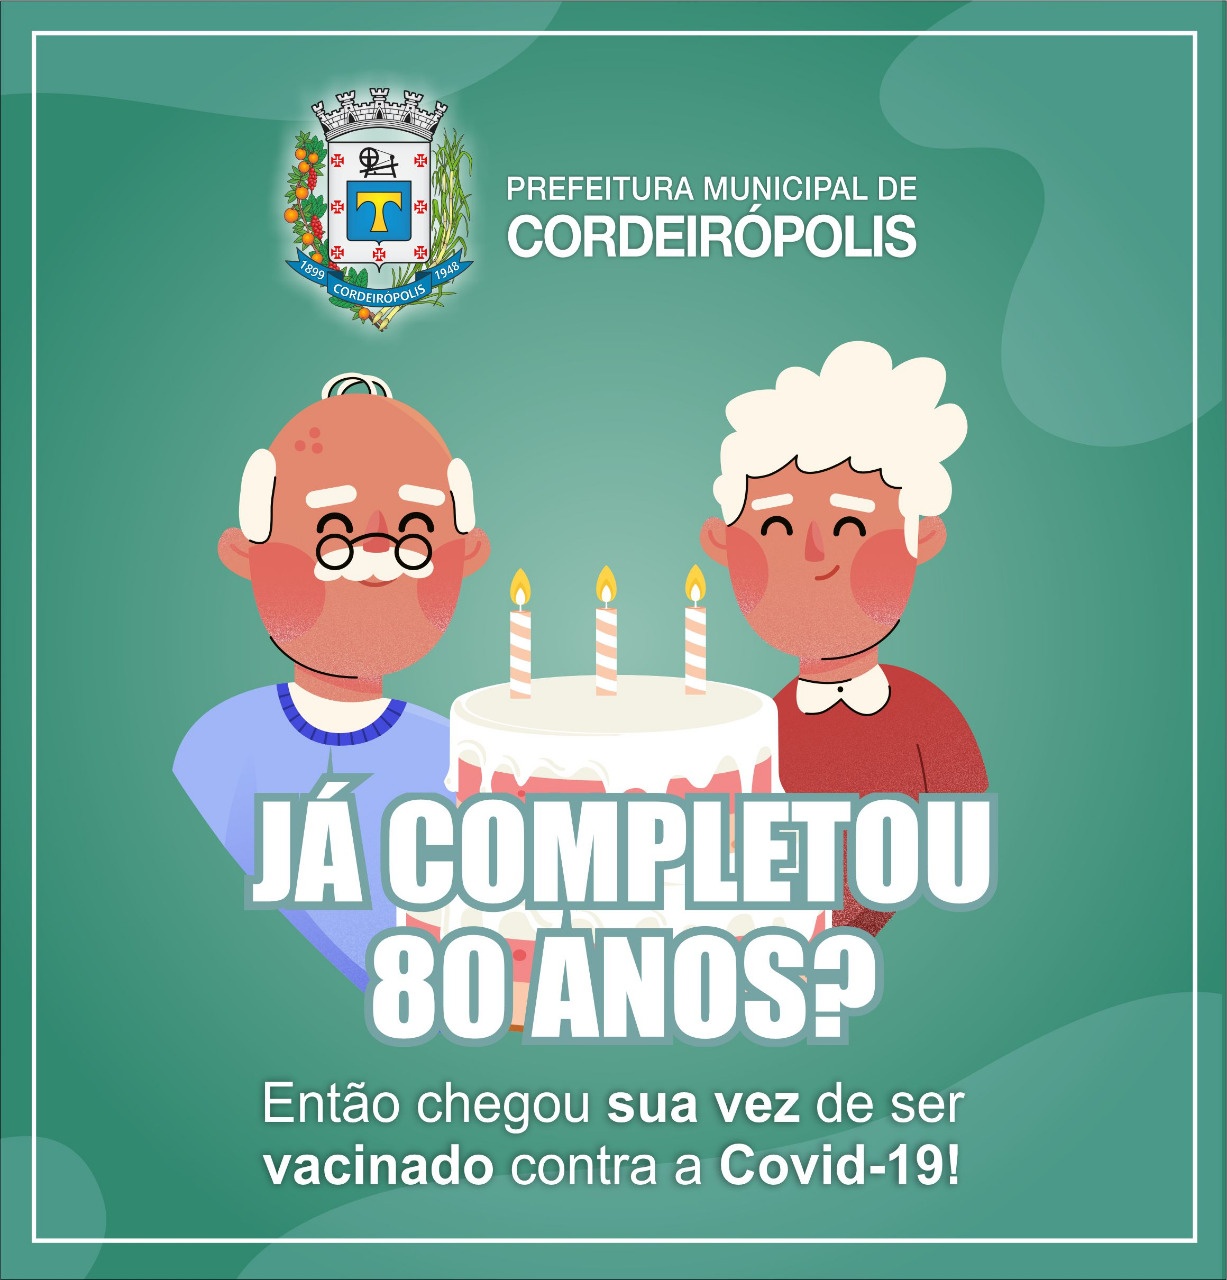 454 idosos são vacinados contra Covid-19 em Cordeirópolis